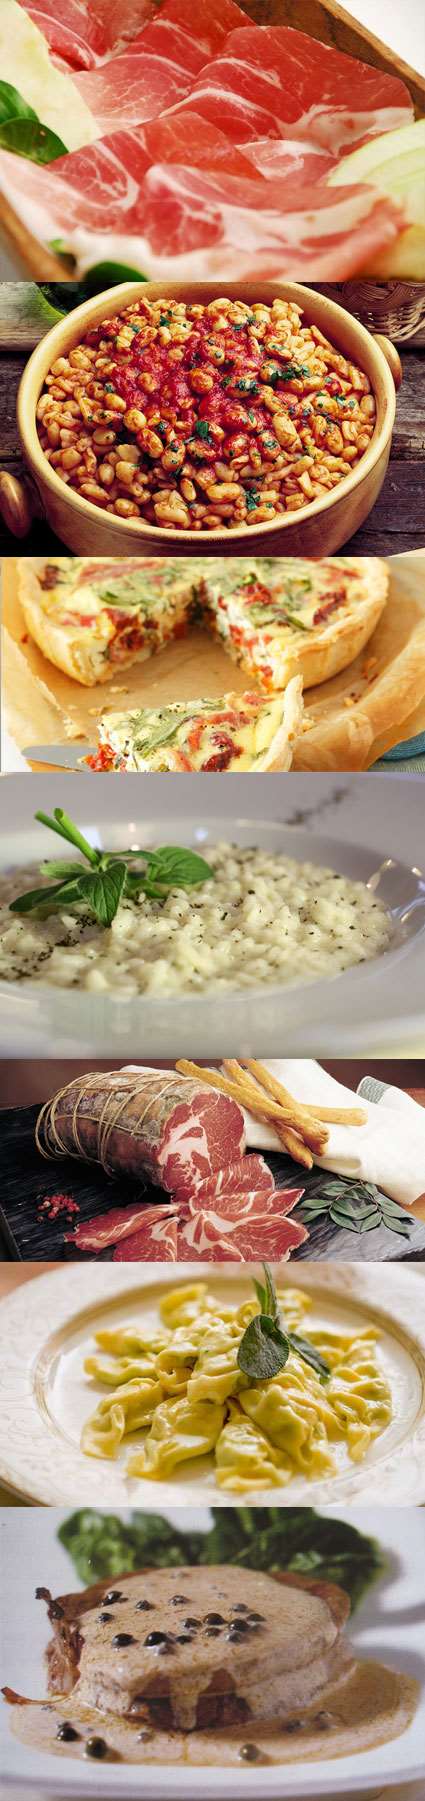 il menu - Ristorante Trattoria La Noce, cucina tipica piacentina, menù alla carta